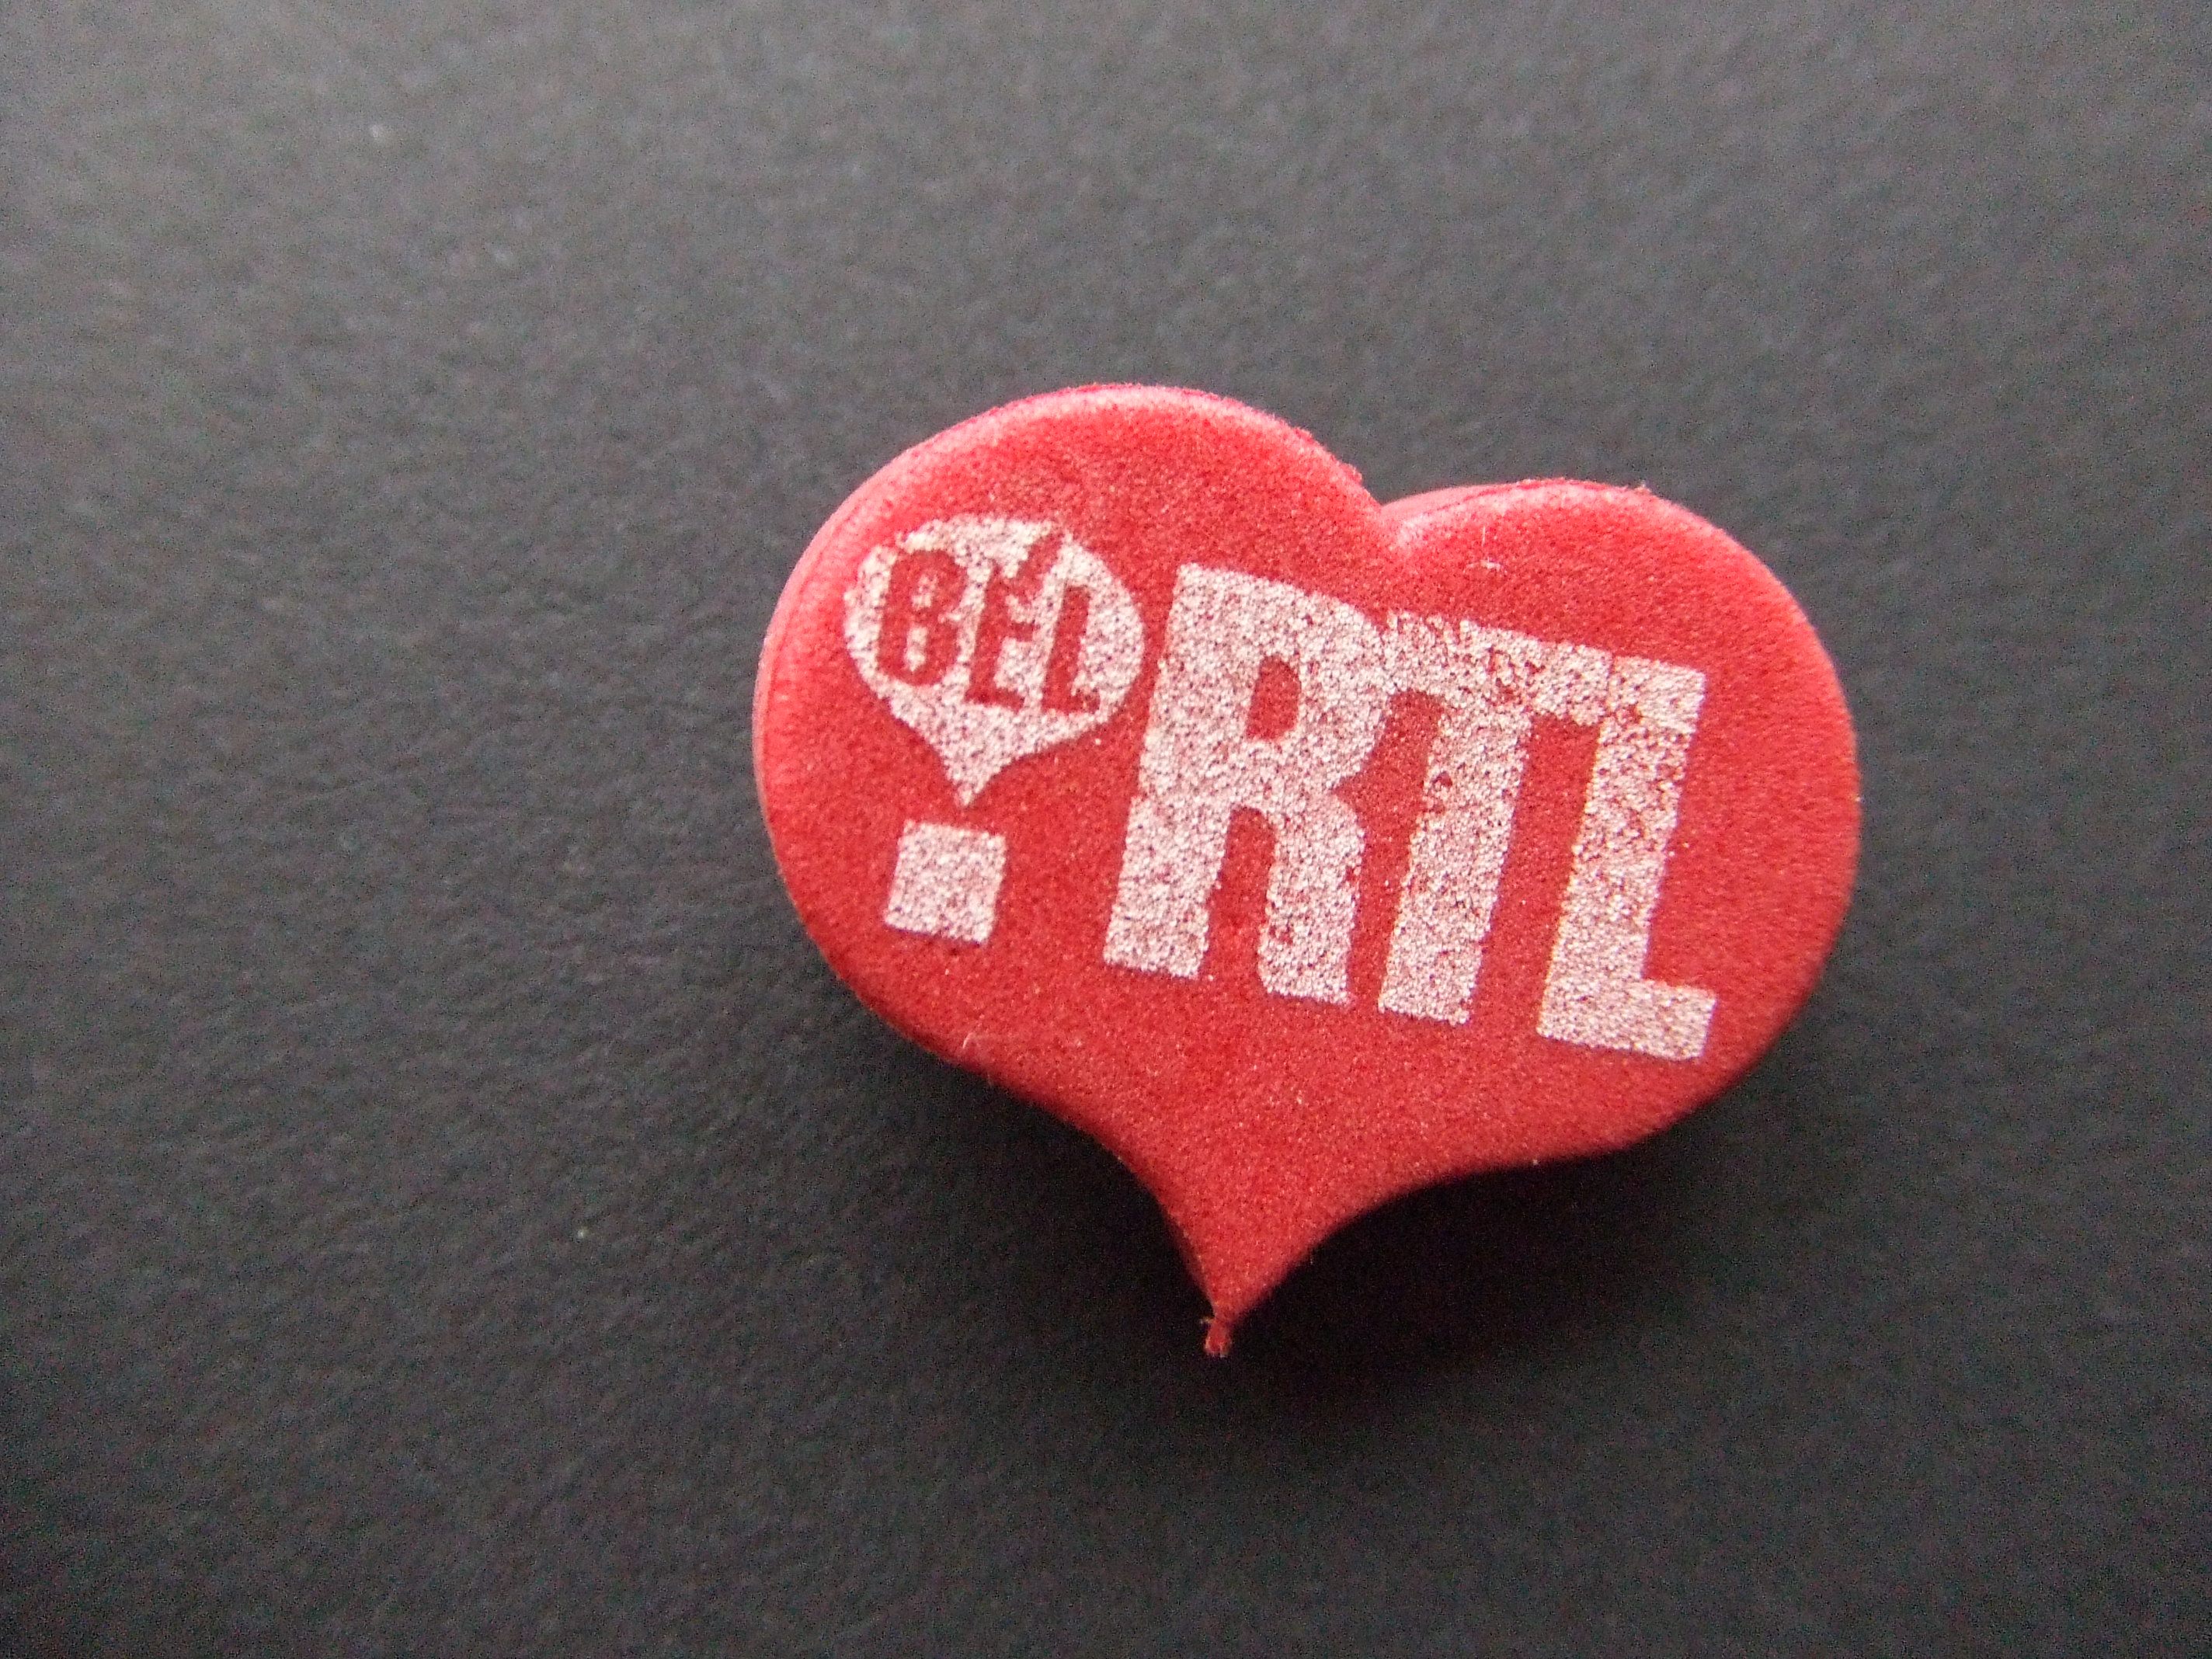 RTL televisie omroep bel